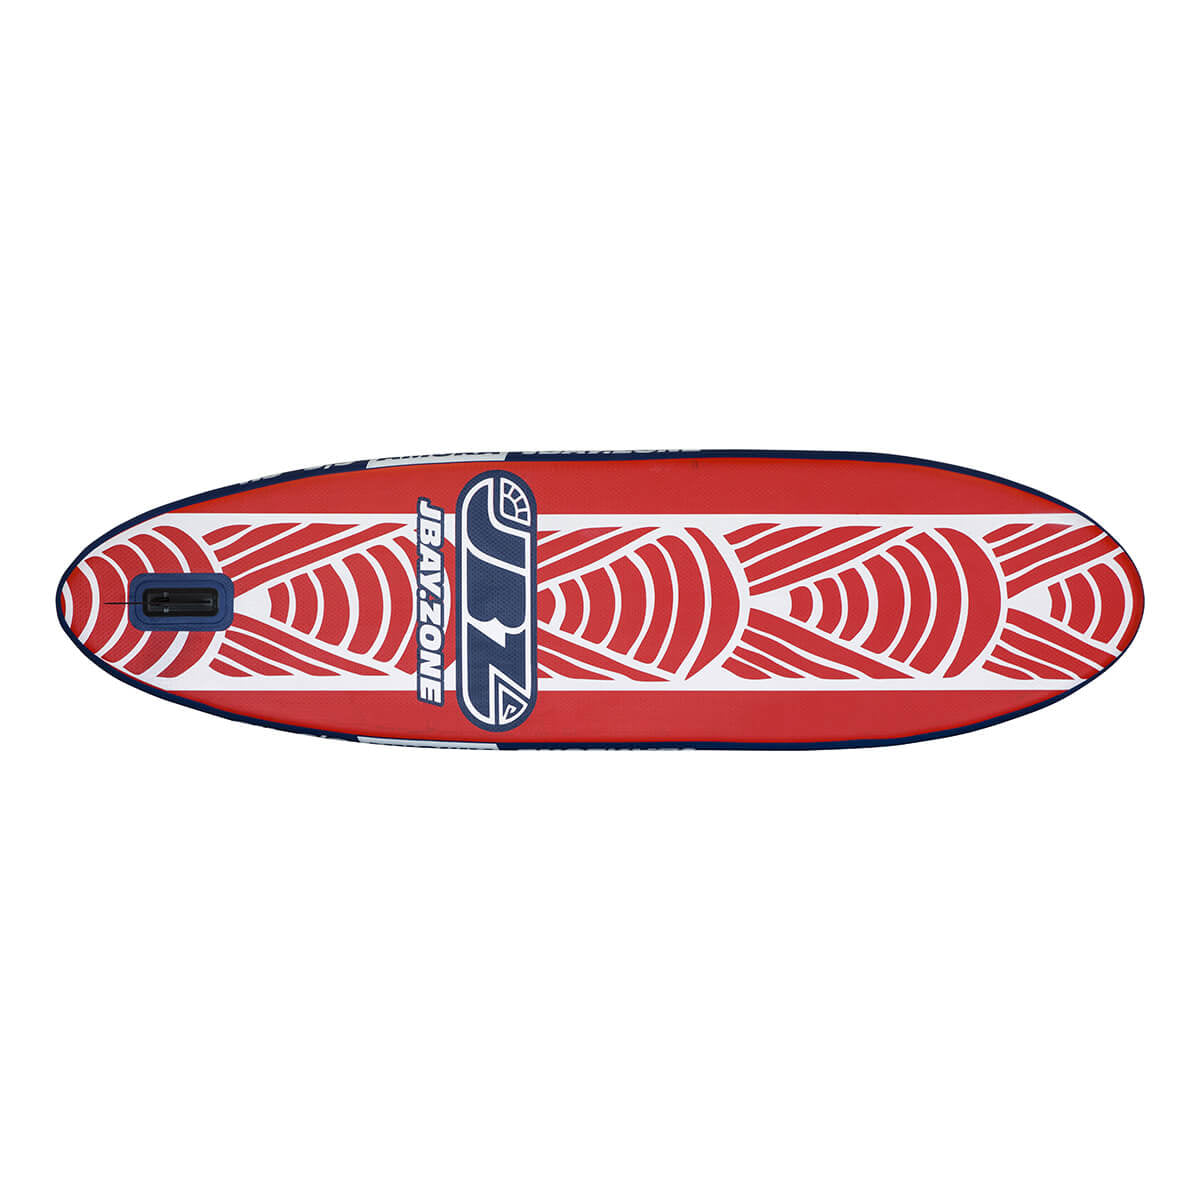 Paddle Board Jbay.Zone Amura H3